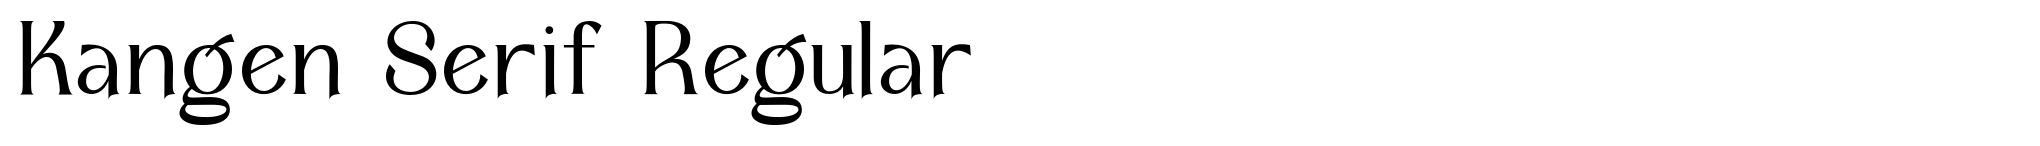 Kangen Serif Regular image